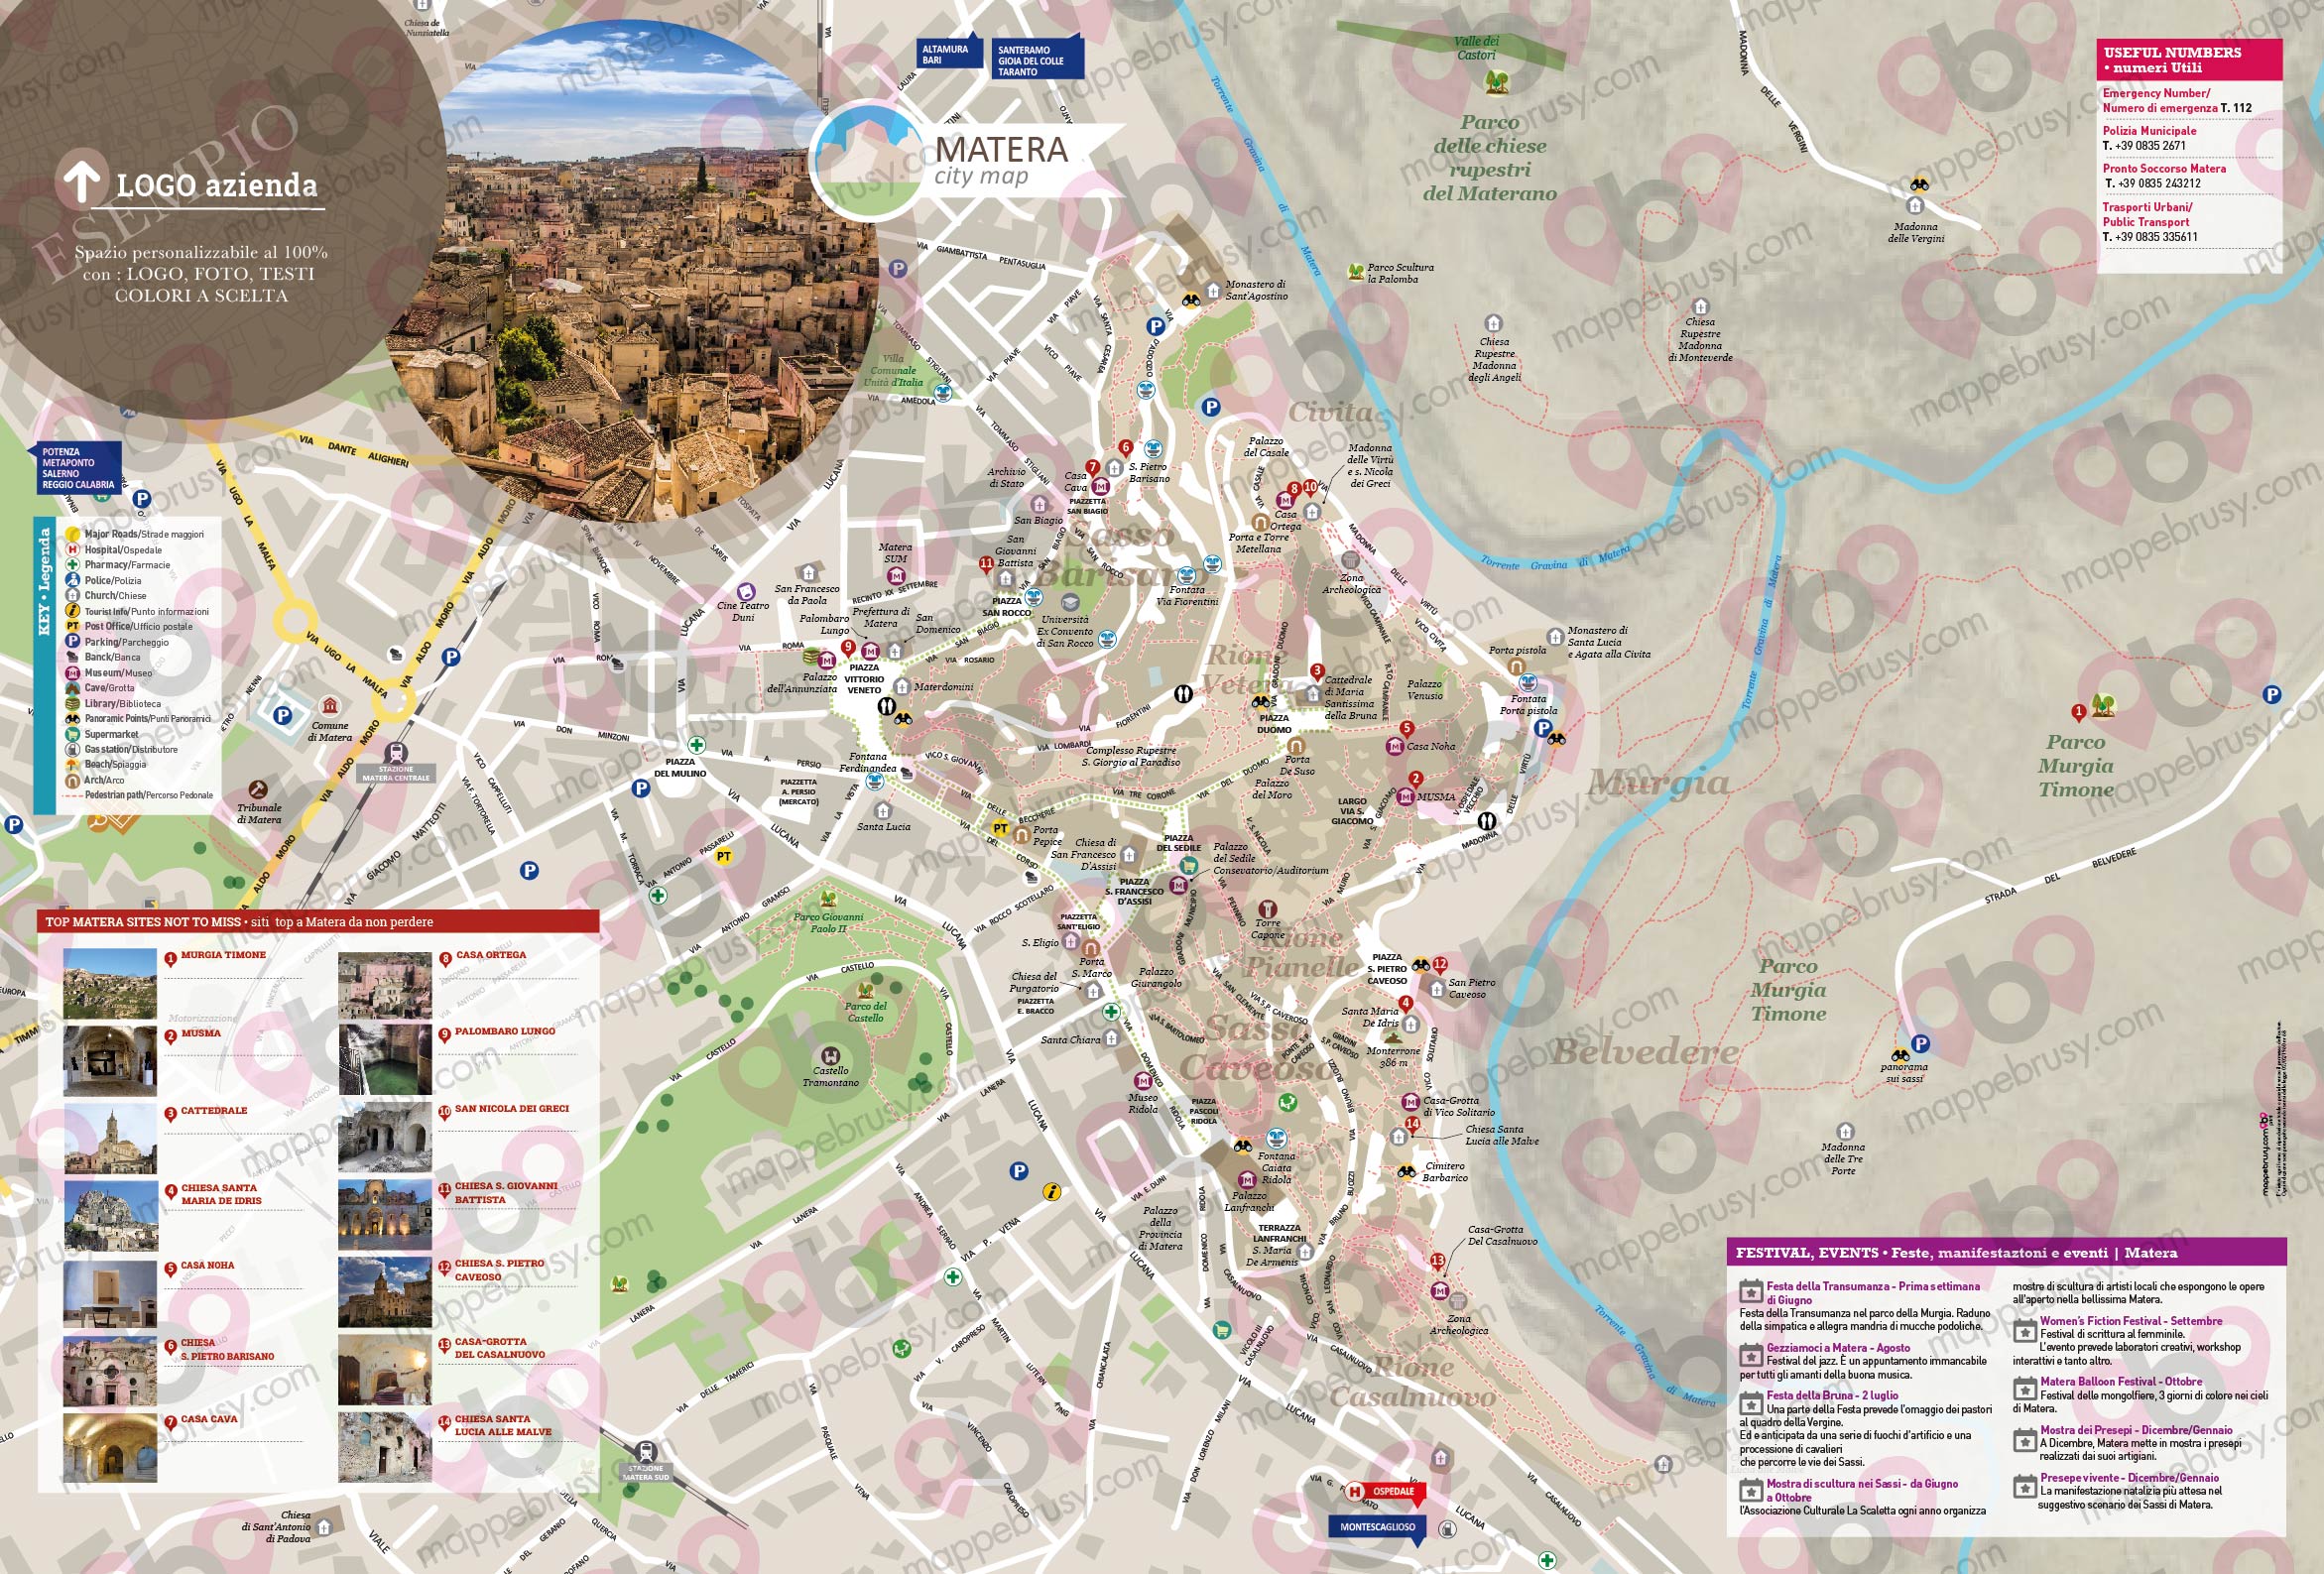 Mappa di Matera - Matera city map - mappa Matera - mappa personalizzata di Matera